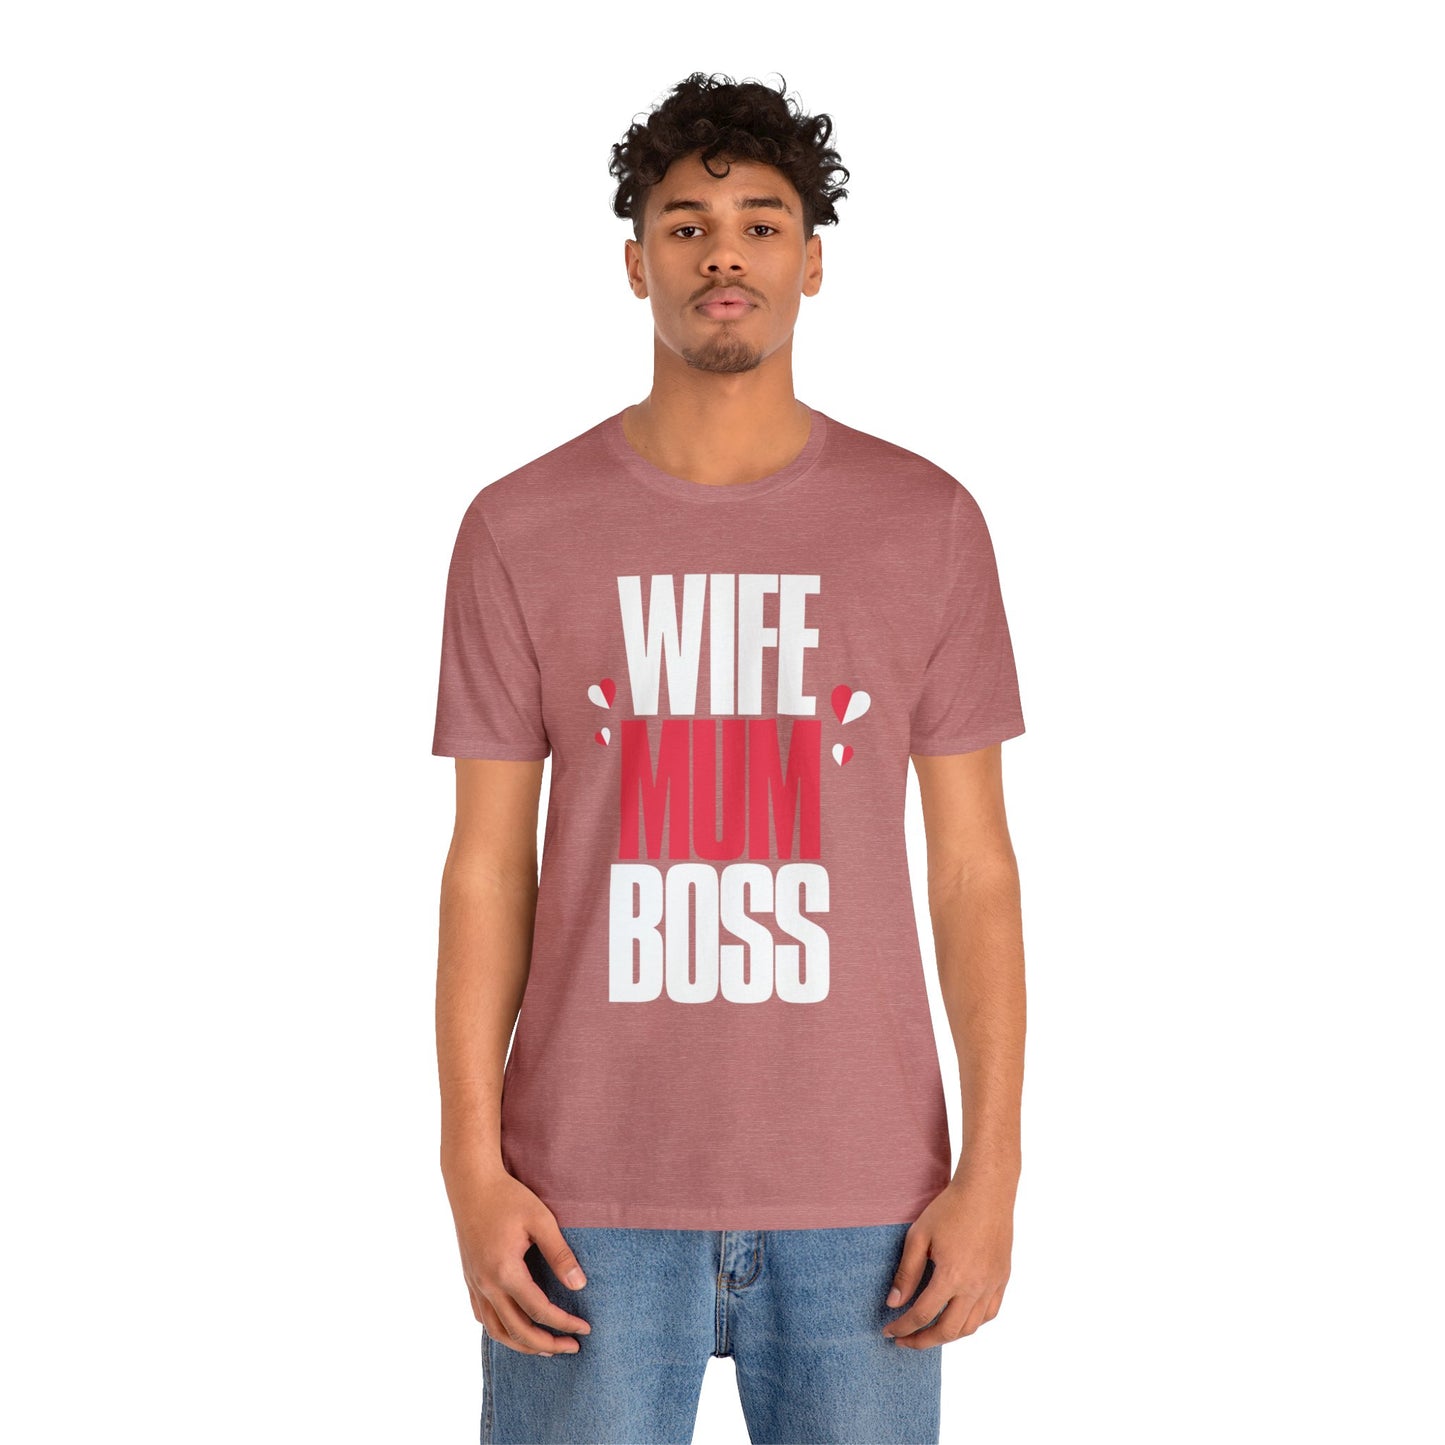 Wife mum boss Jersey Short Sleeve Tee